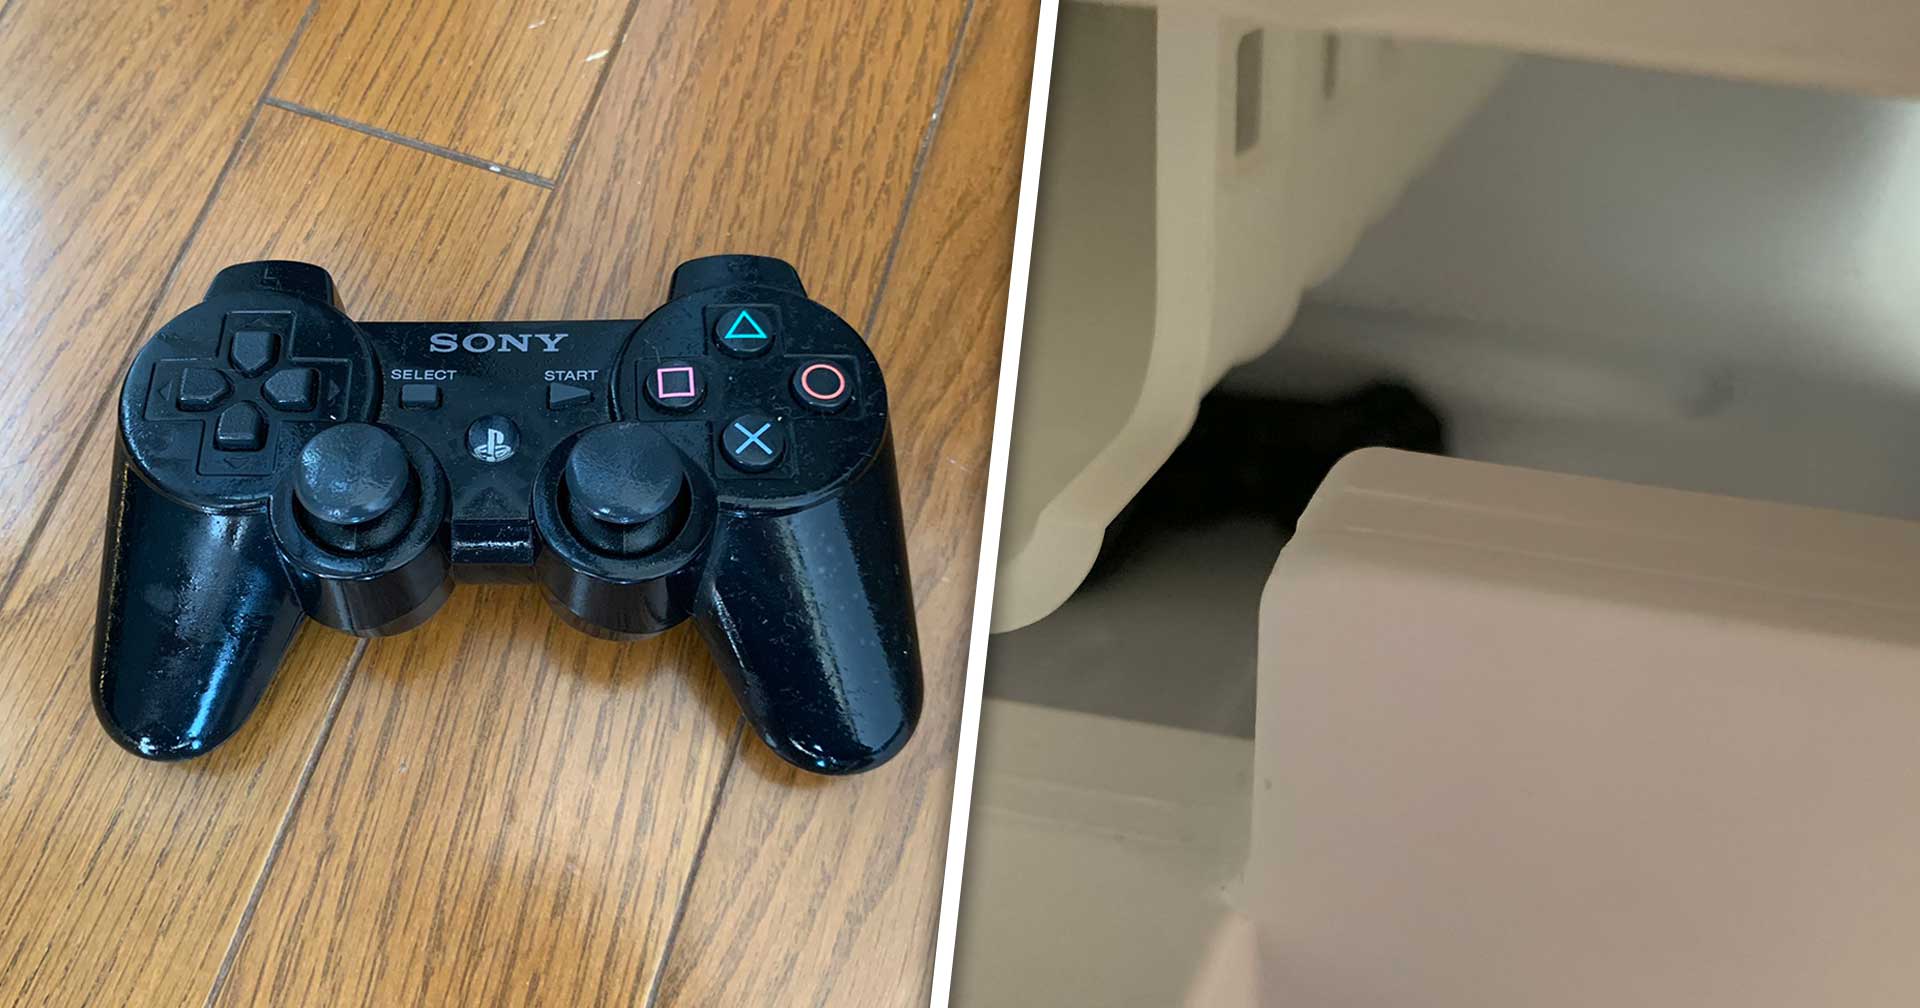 นักวาดชาวญี่ปุ่นพบจอย PS3 ในตู้เย็นของตัวเอง ที่ถูกแช่มามากกว่า 5 ปี แต่ไม่รู้ว่าเป็นของใคร